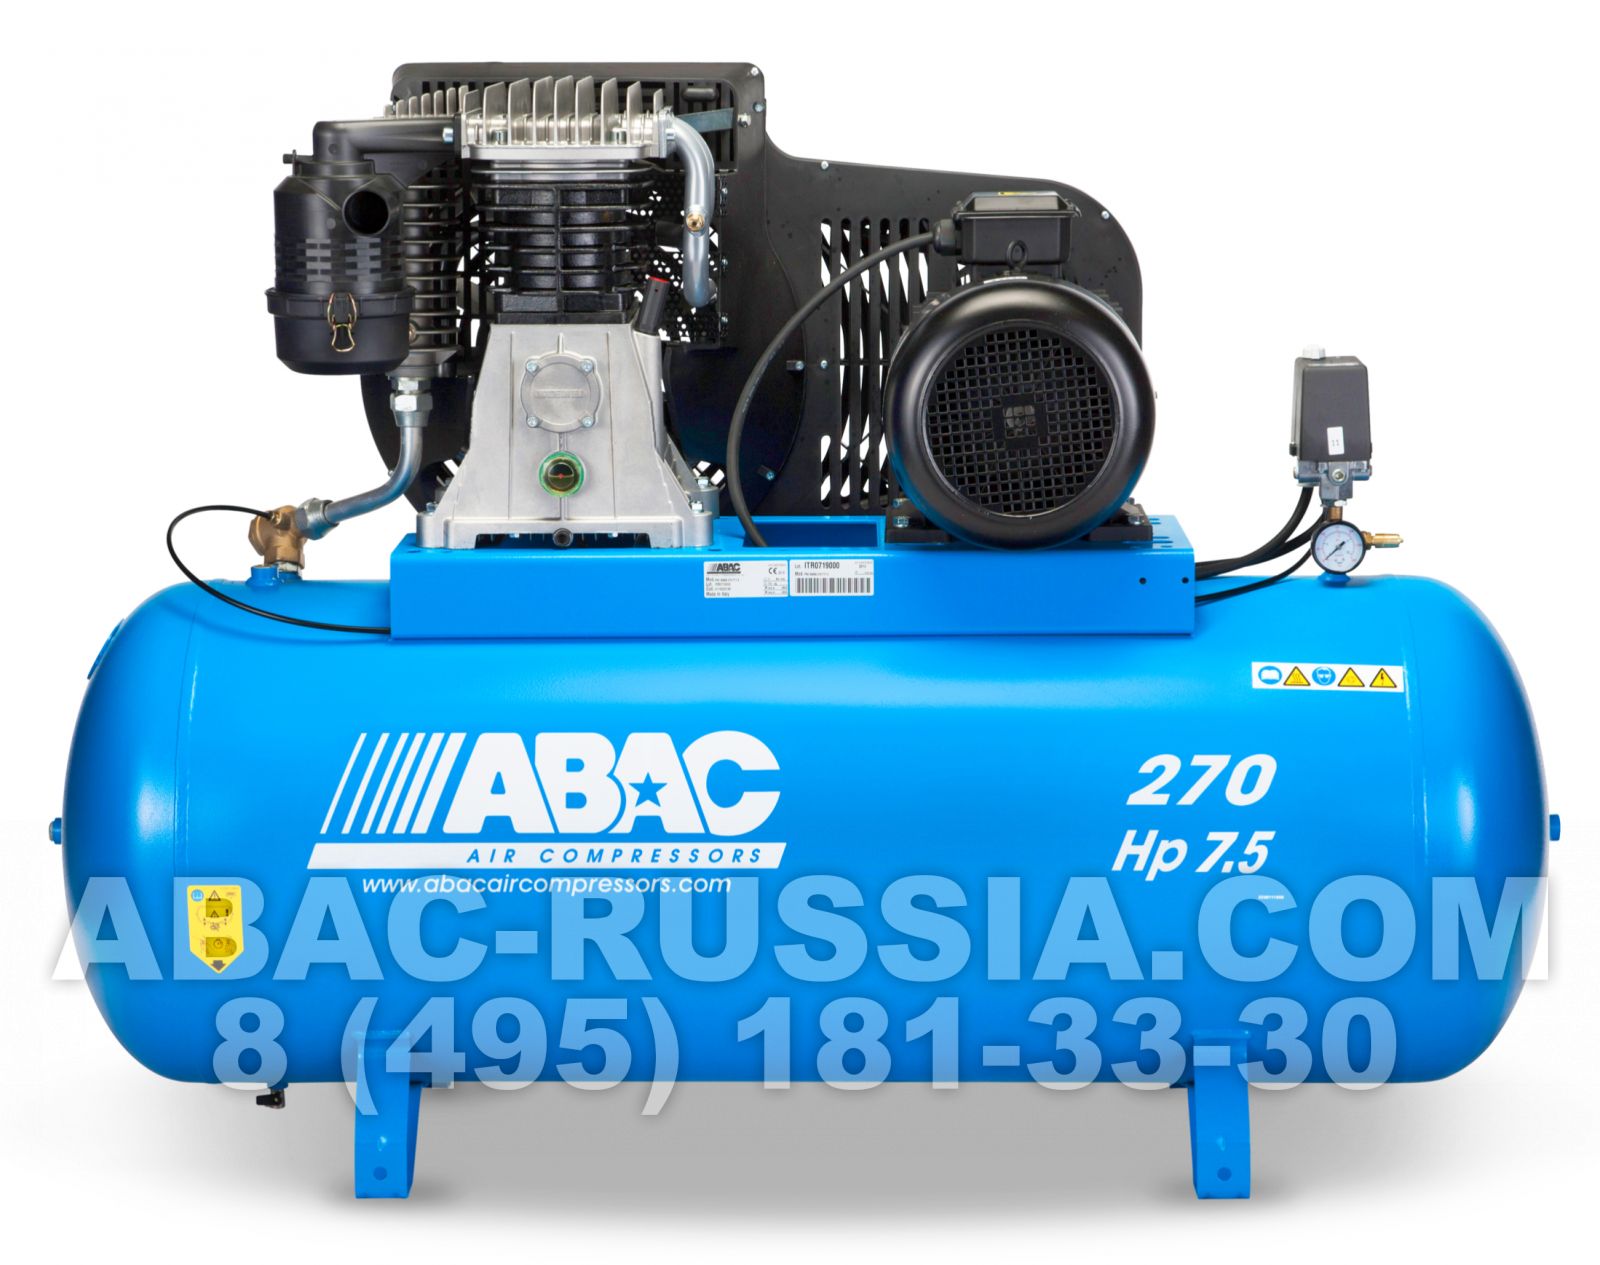 Поршневой компрессор ABAC B6000/270 CT 7,5